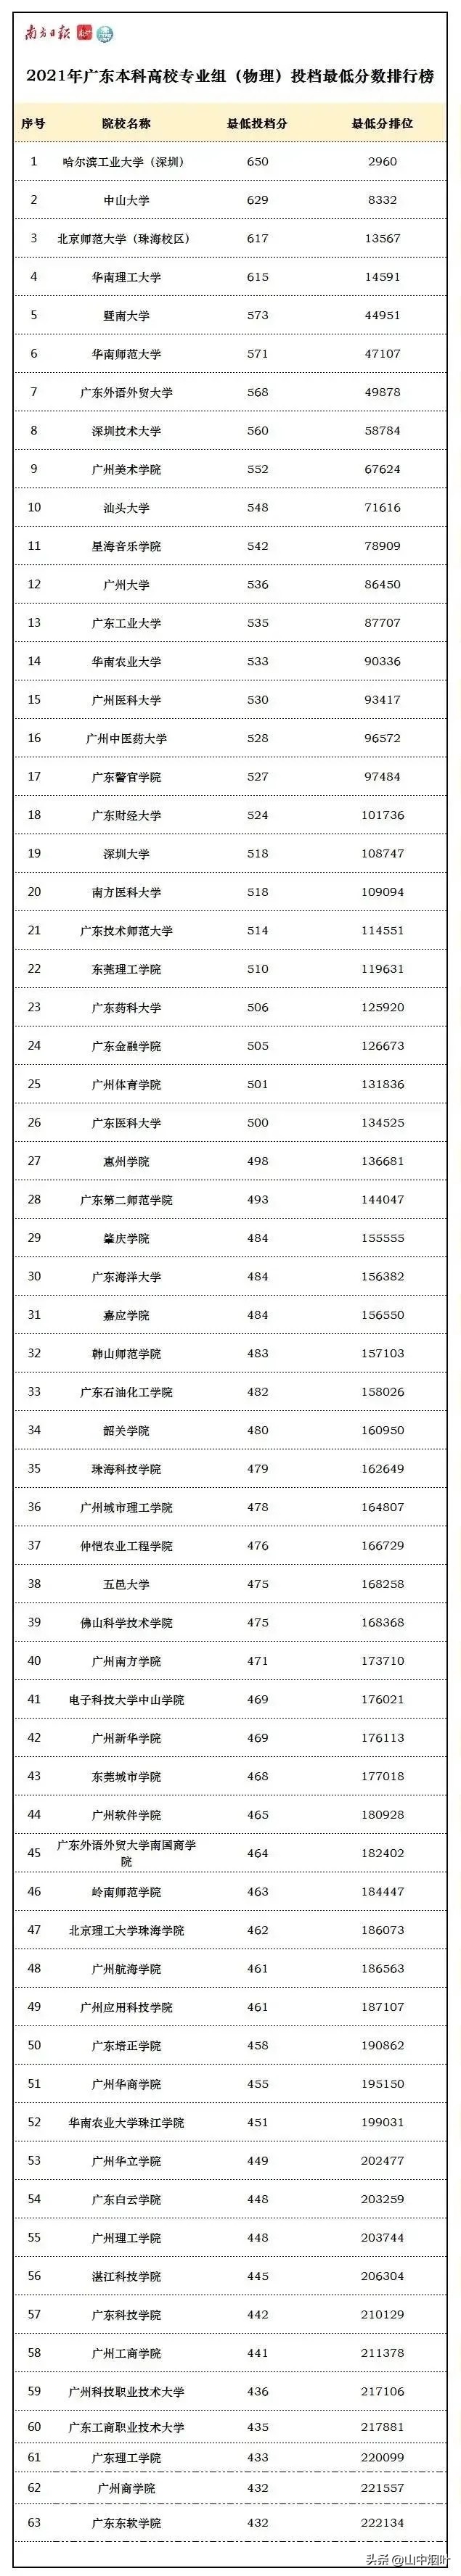 双一流学校及广东本科院校今年高考最低投档线排名